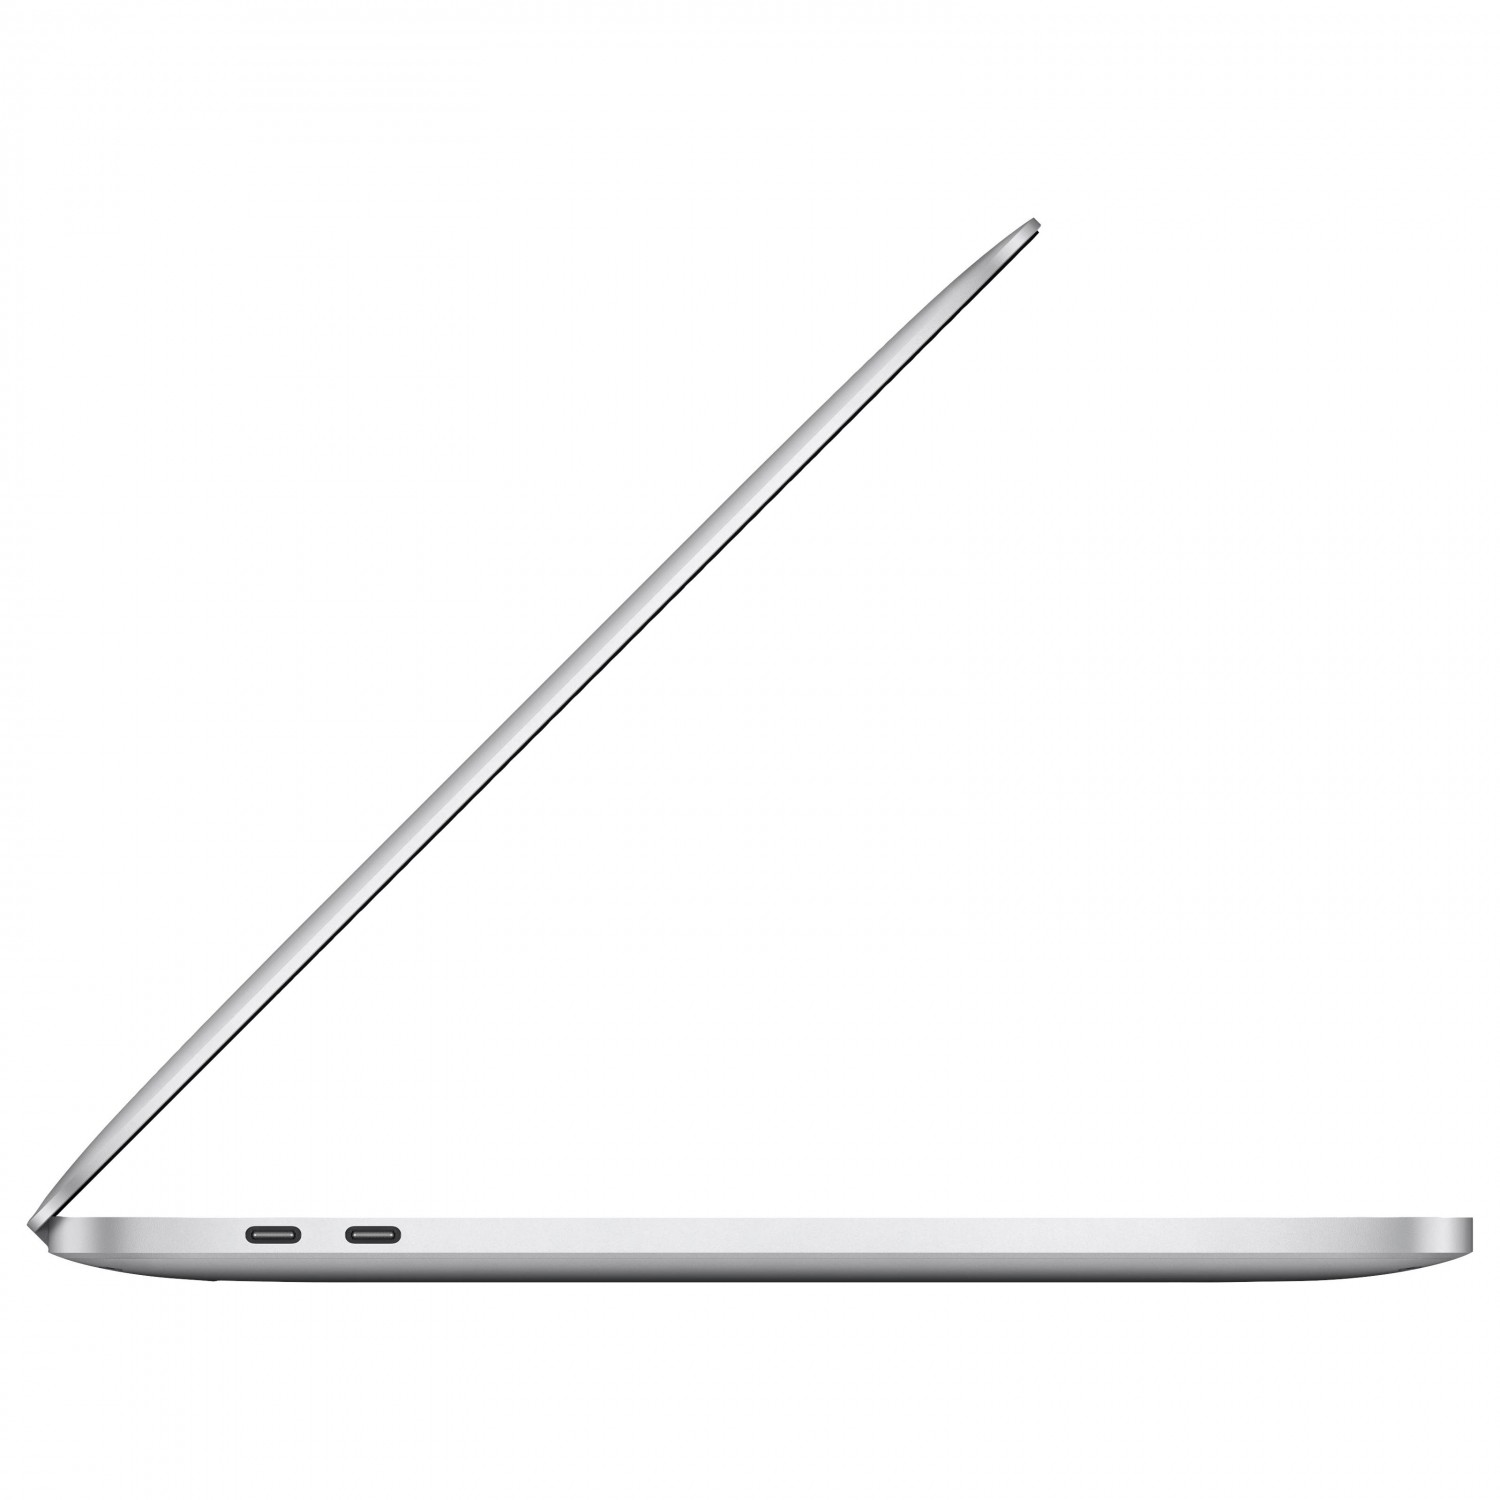 لپ تاپ Apple MacBook Pro 13 2020 CTO - Silver - E-4